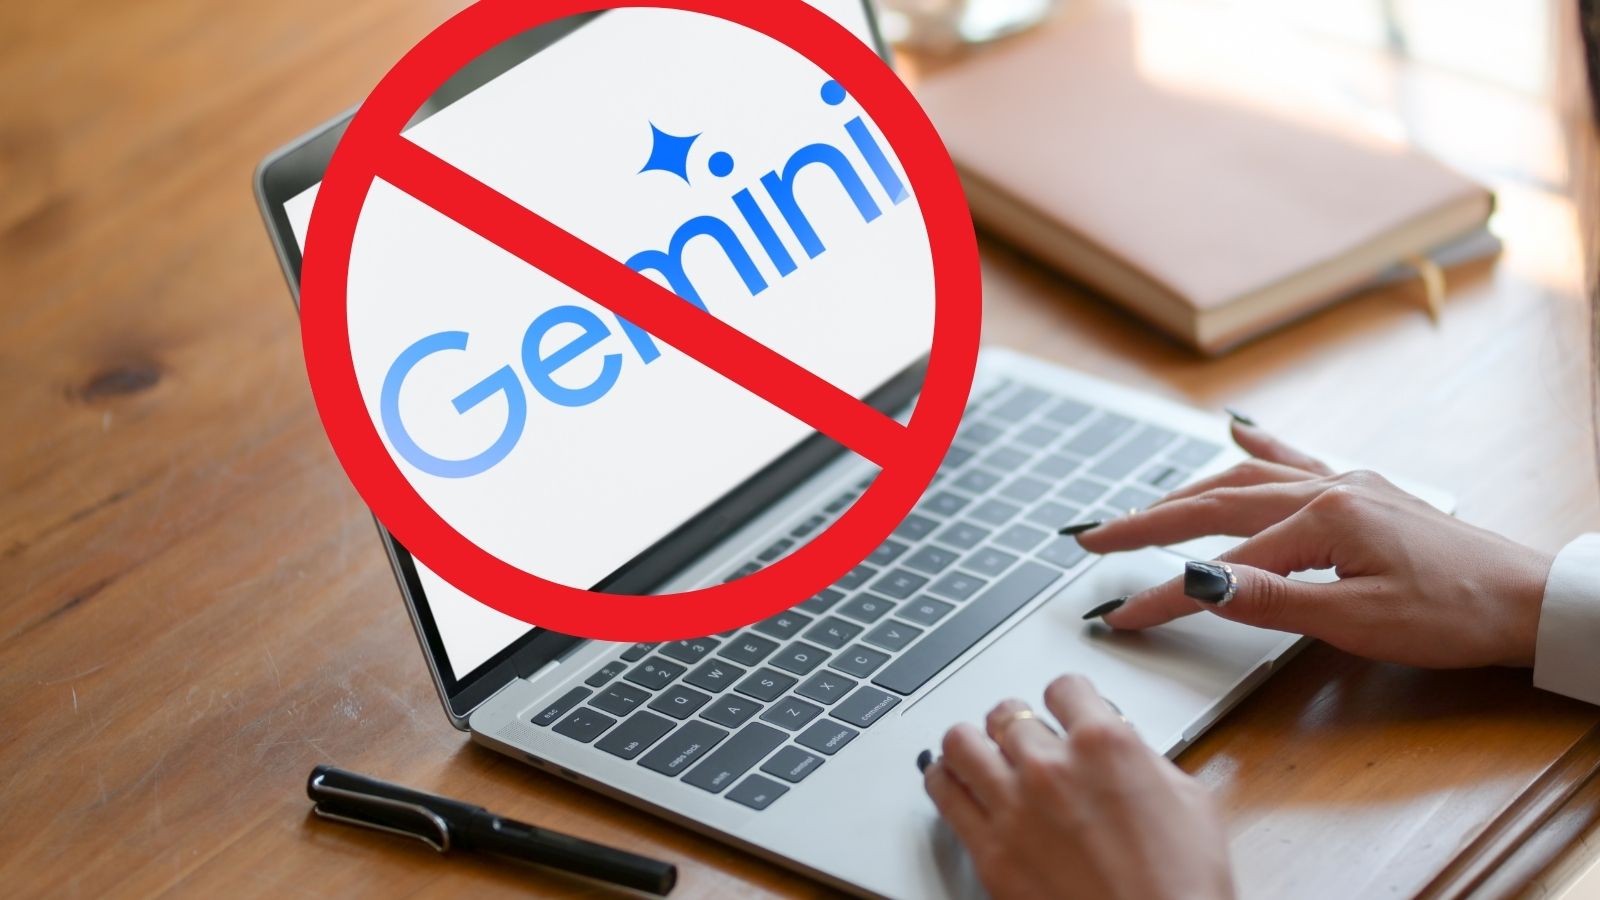 Google blocca la capacità di Gemini di creare immagini: perché?